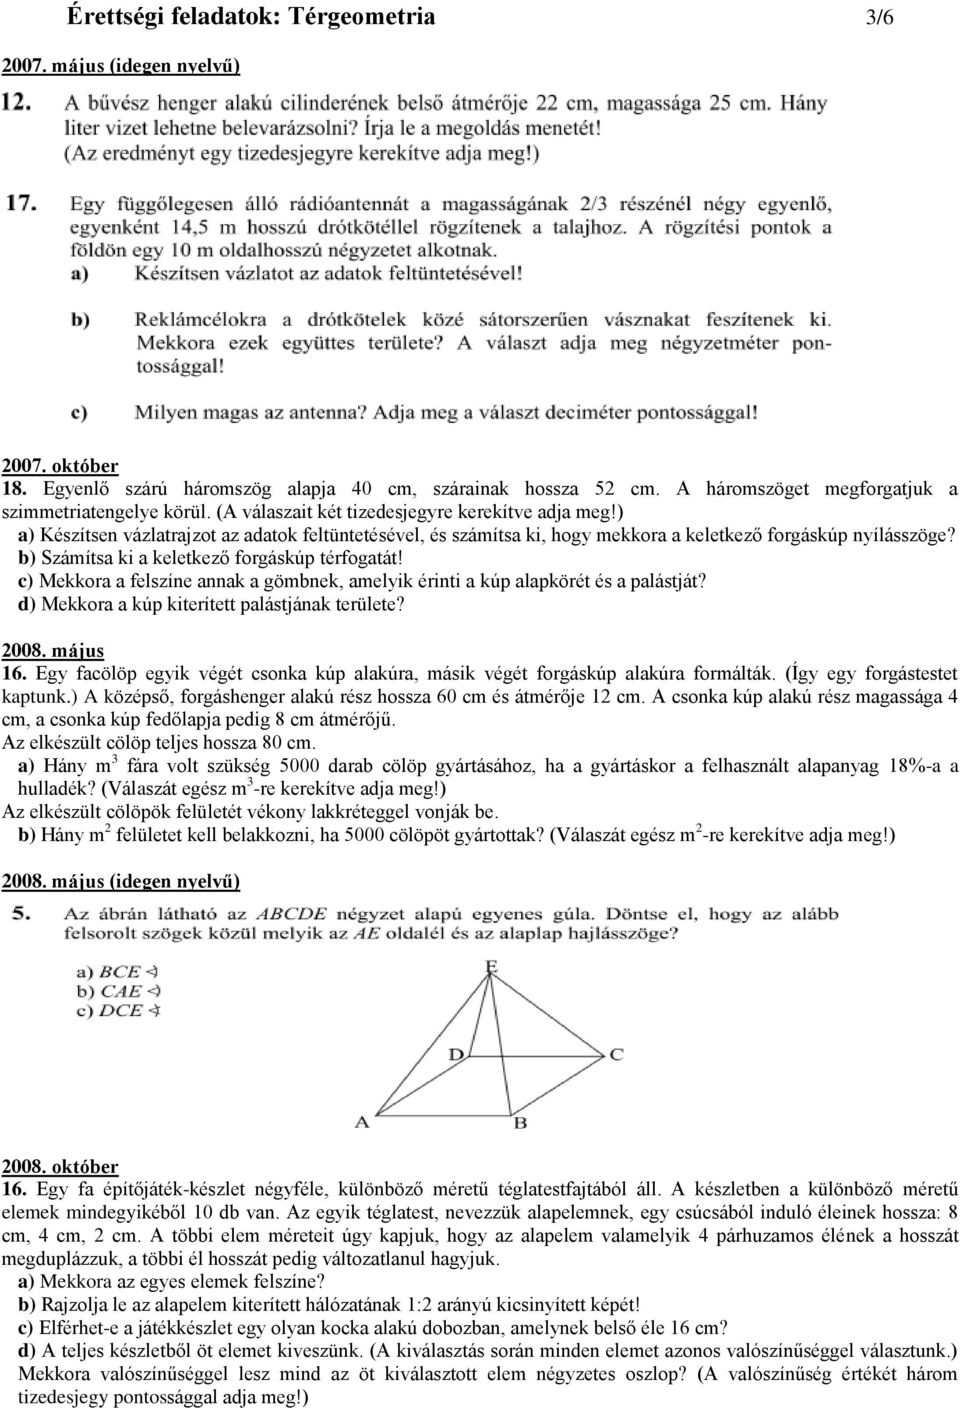 Érettségi feladatok: Térgeometria 1/6 - PDF Ingyenes letöltés